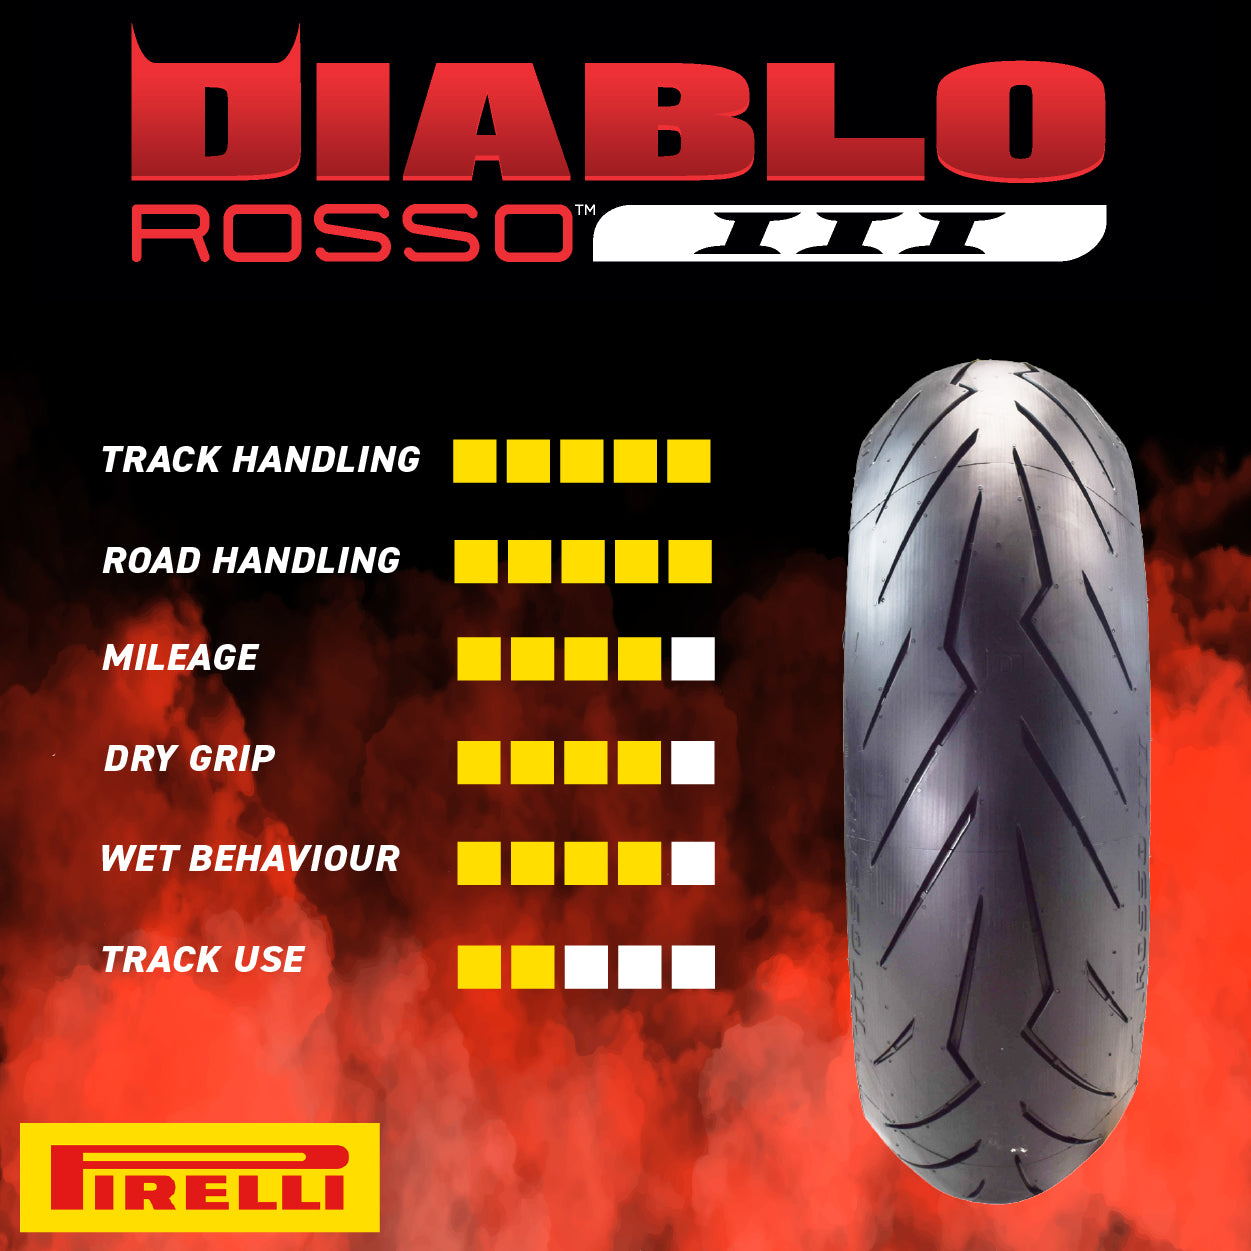 Pirelli Diablo Rosso III 120/70ZR17 190/55ZR17 Front & Rear Motorcycle Tire Set